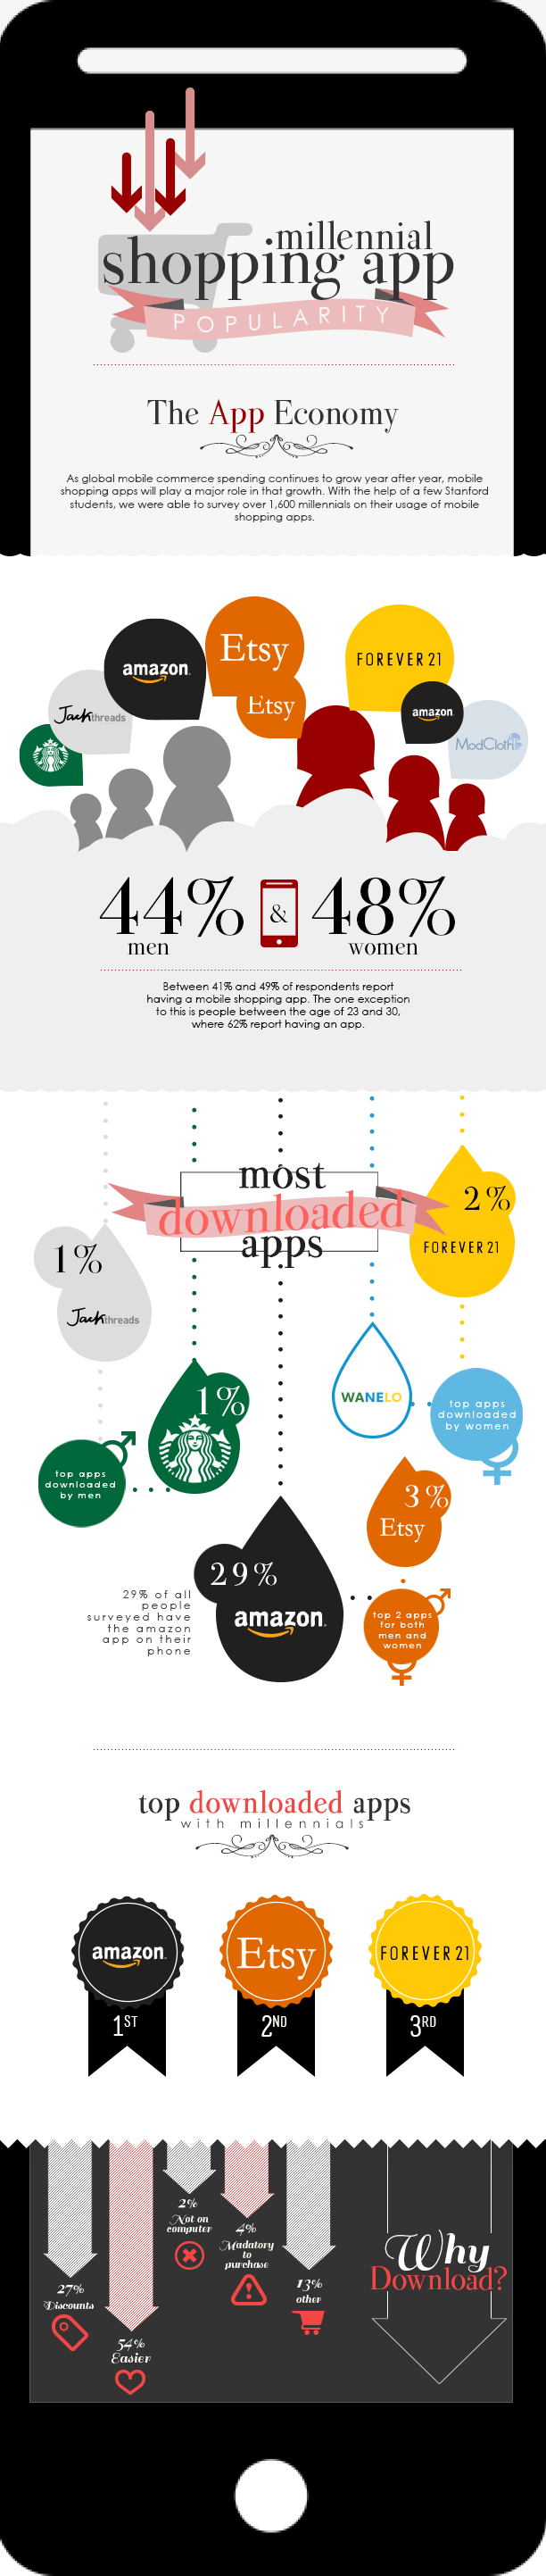 infografia-millennials-apps-compras